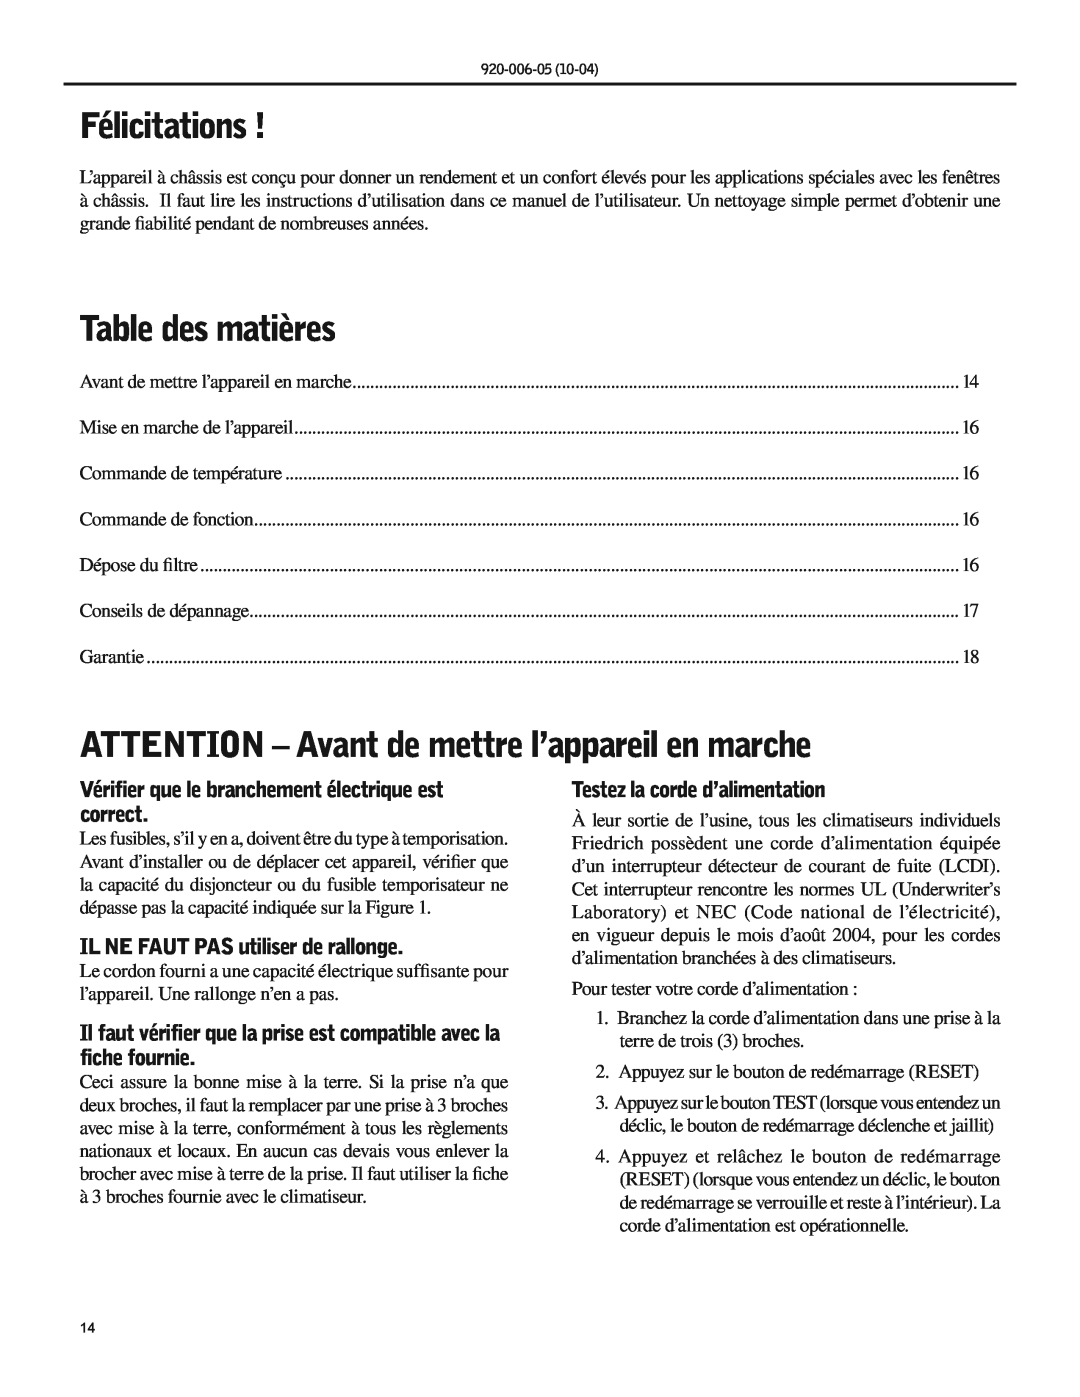 Friedrich SC06 manual Félicitations, Table des matières, ATTENTION - Avant de mettre l’appareil en marche 